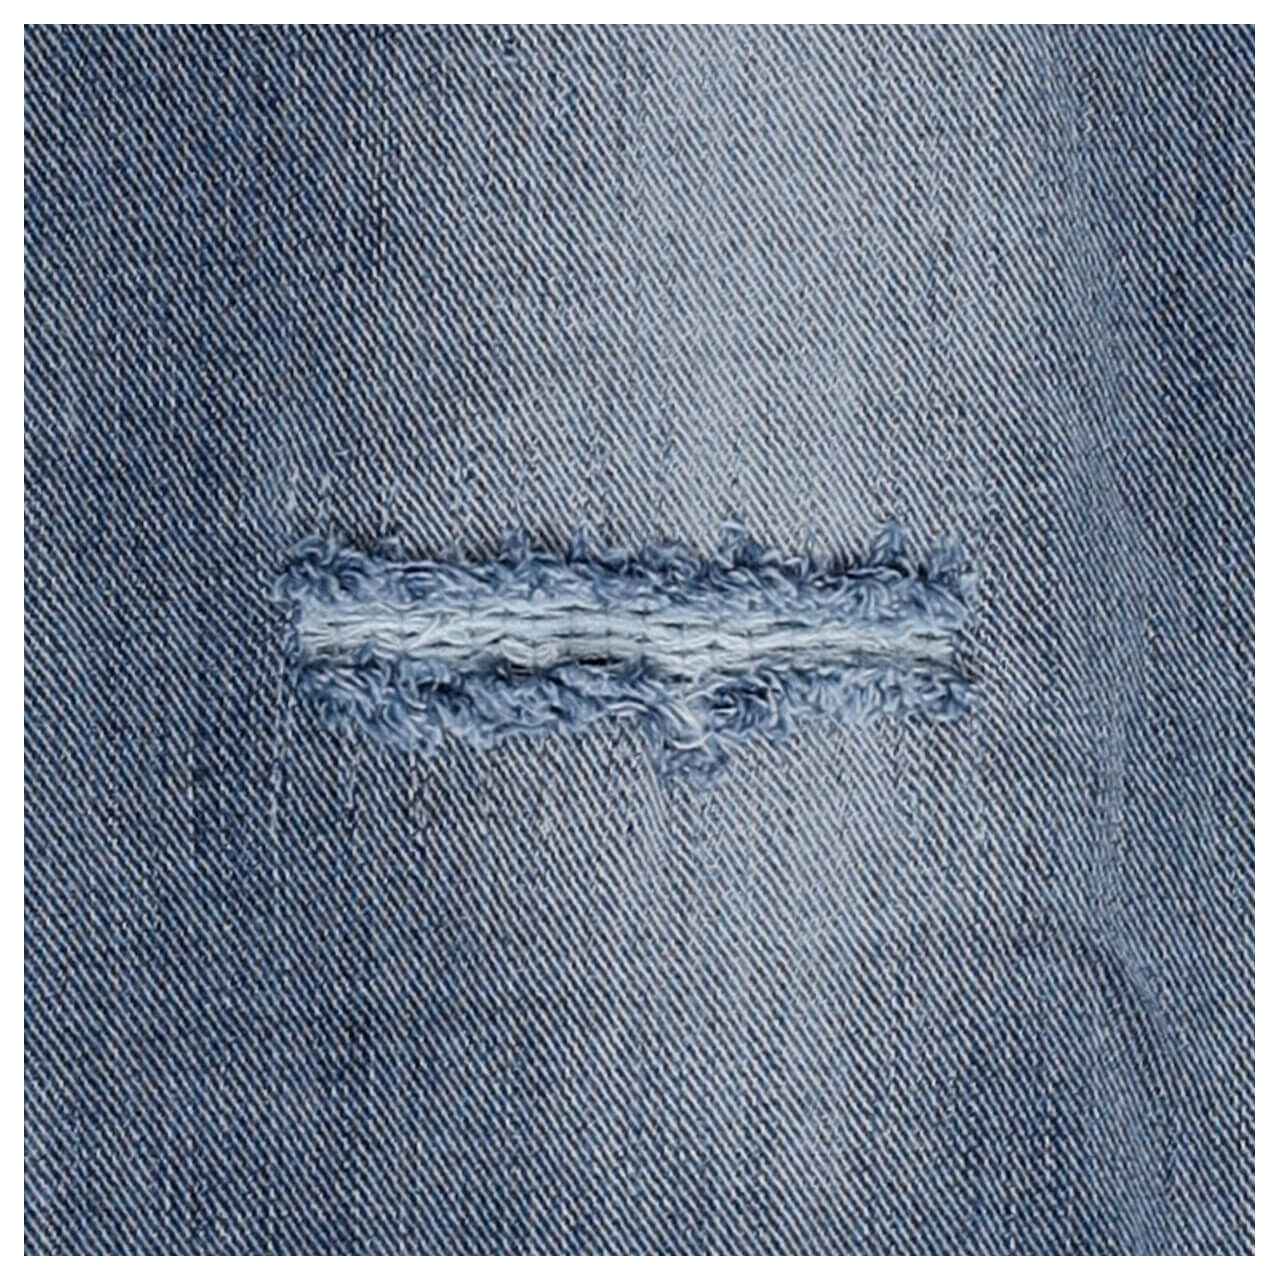 Buena Vista Malibu Cropped Stretch Denim Jeans repair denim